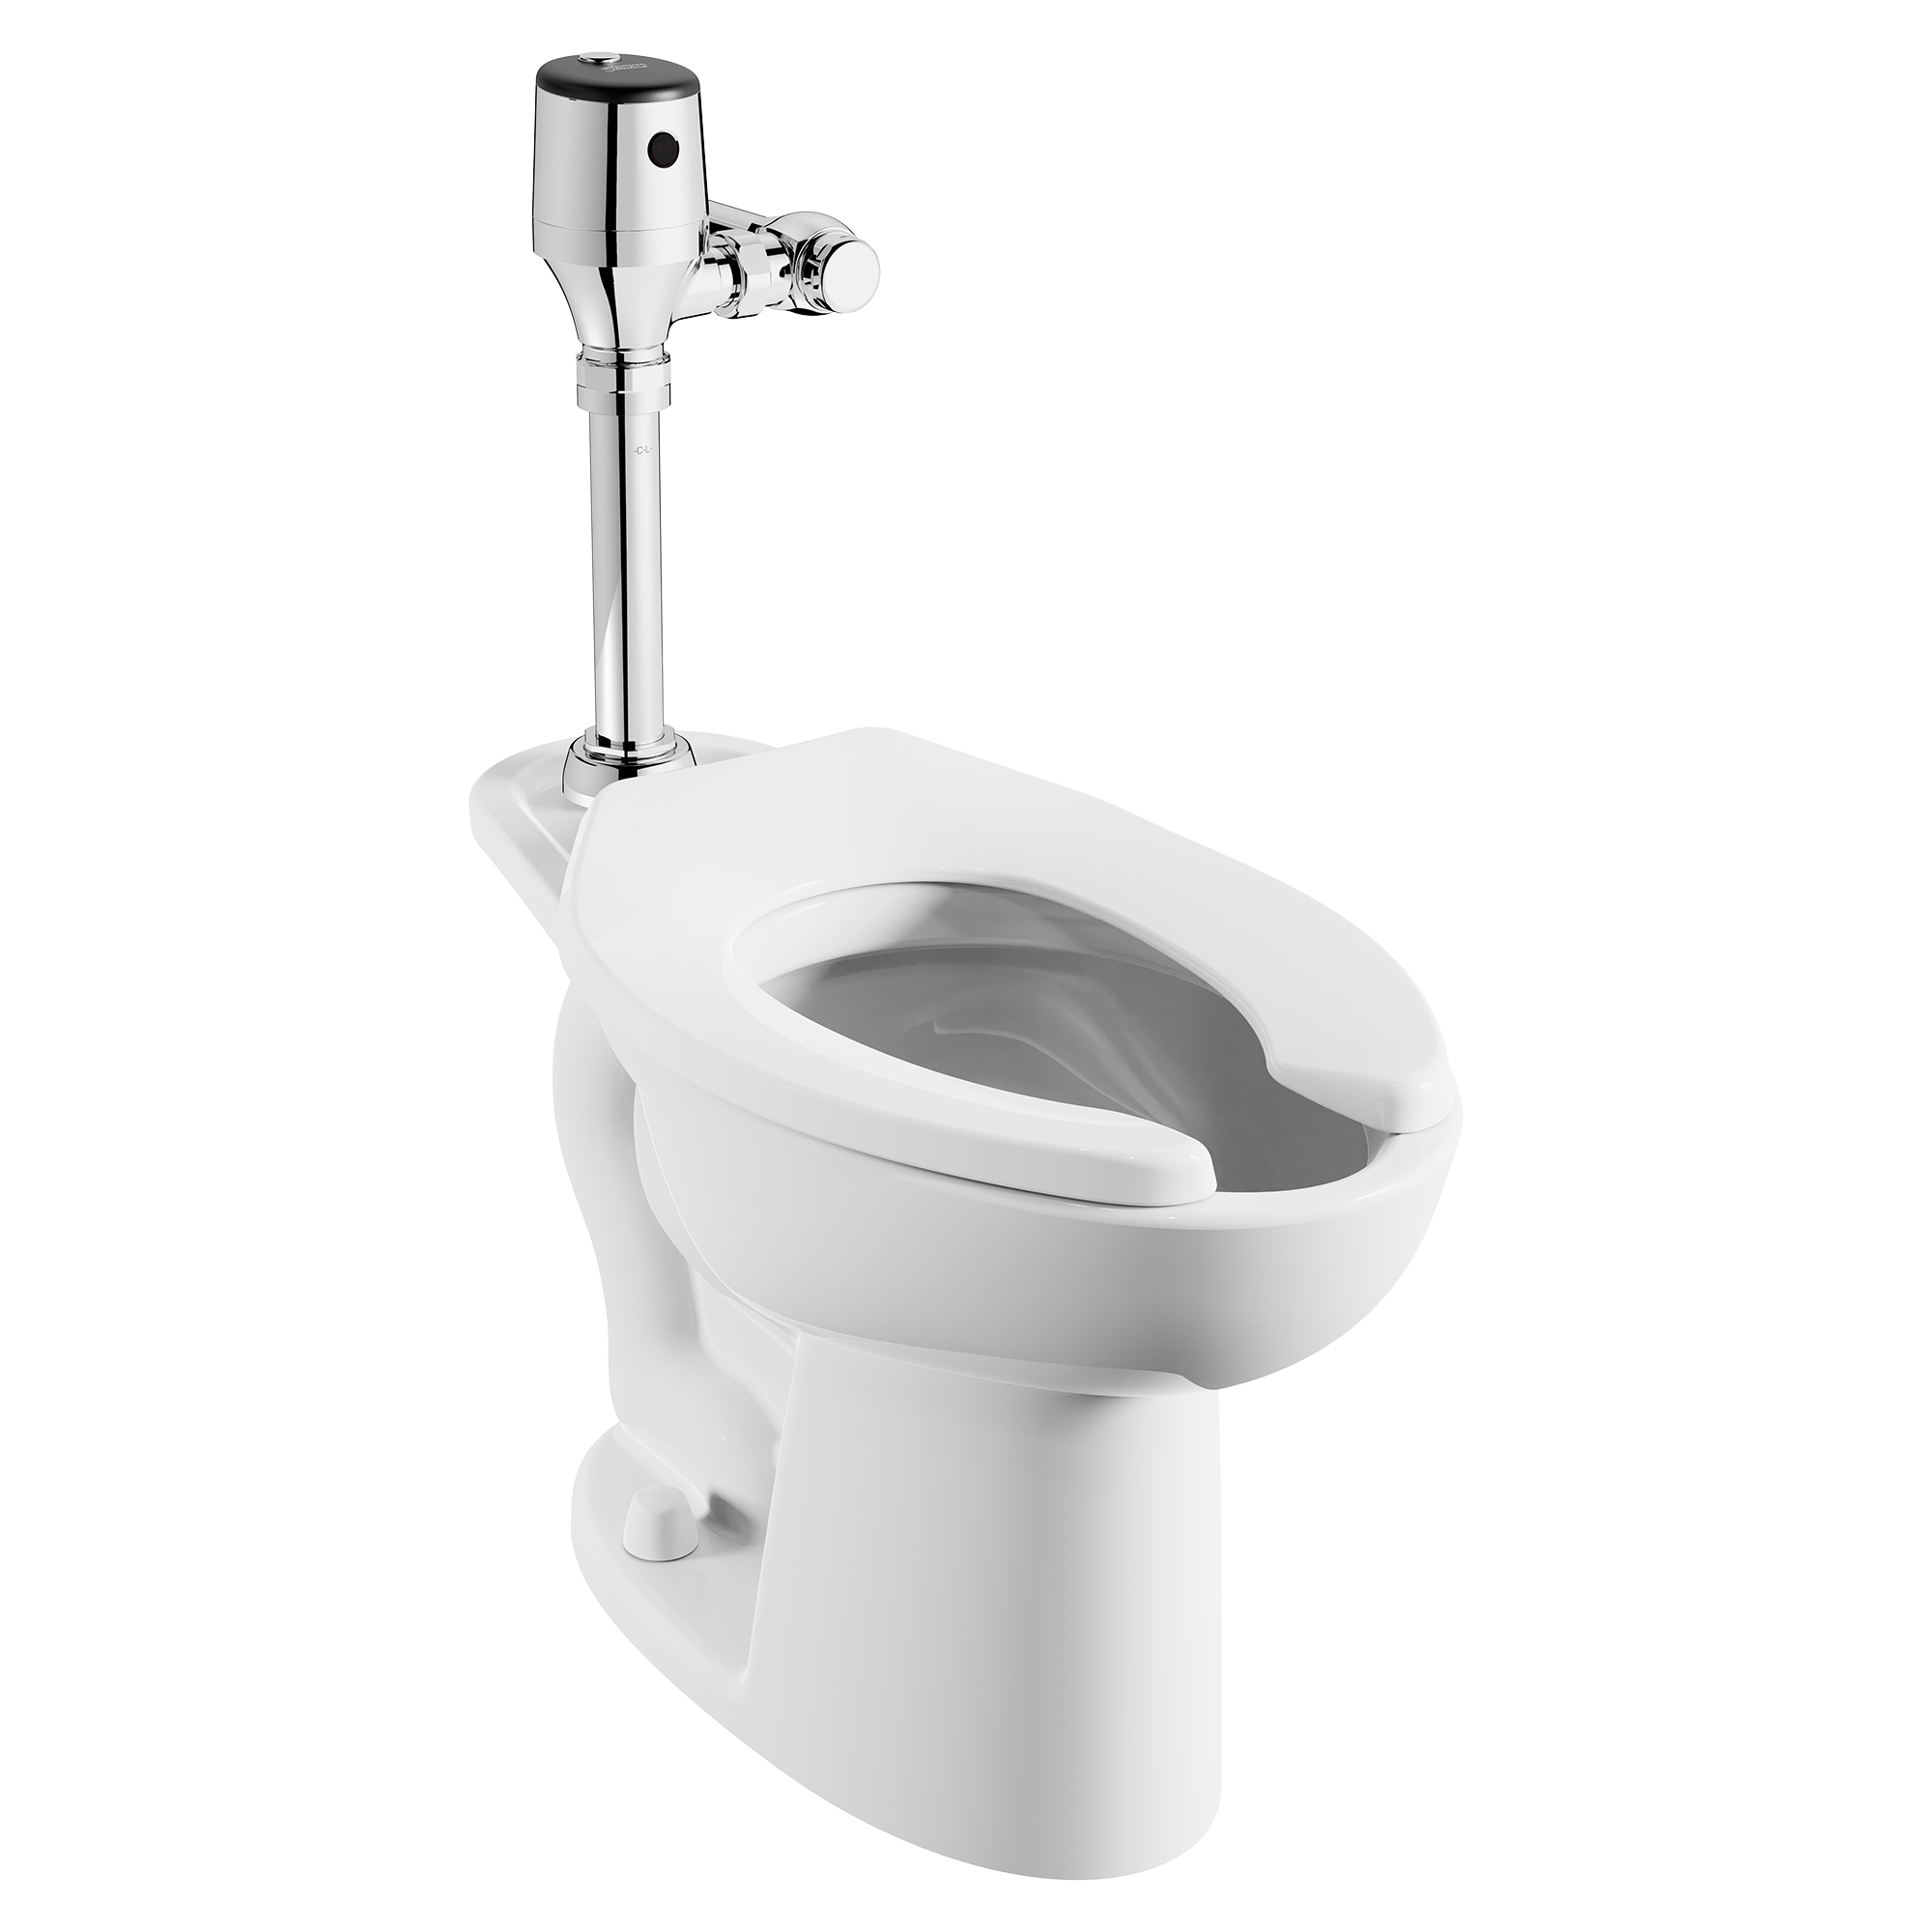 UltimaMC SelectronicMC - Robinet de chasse d'eau pour toilettes exposées, à diaphragme, pile, double chasse 1,28/1,1 gpc (4,8/4,2 Lpc)